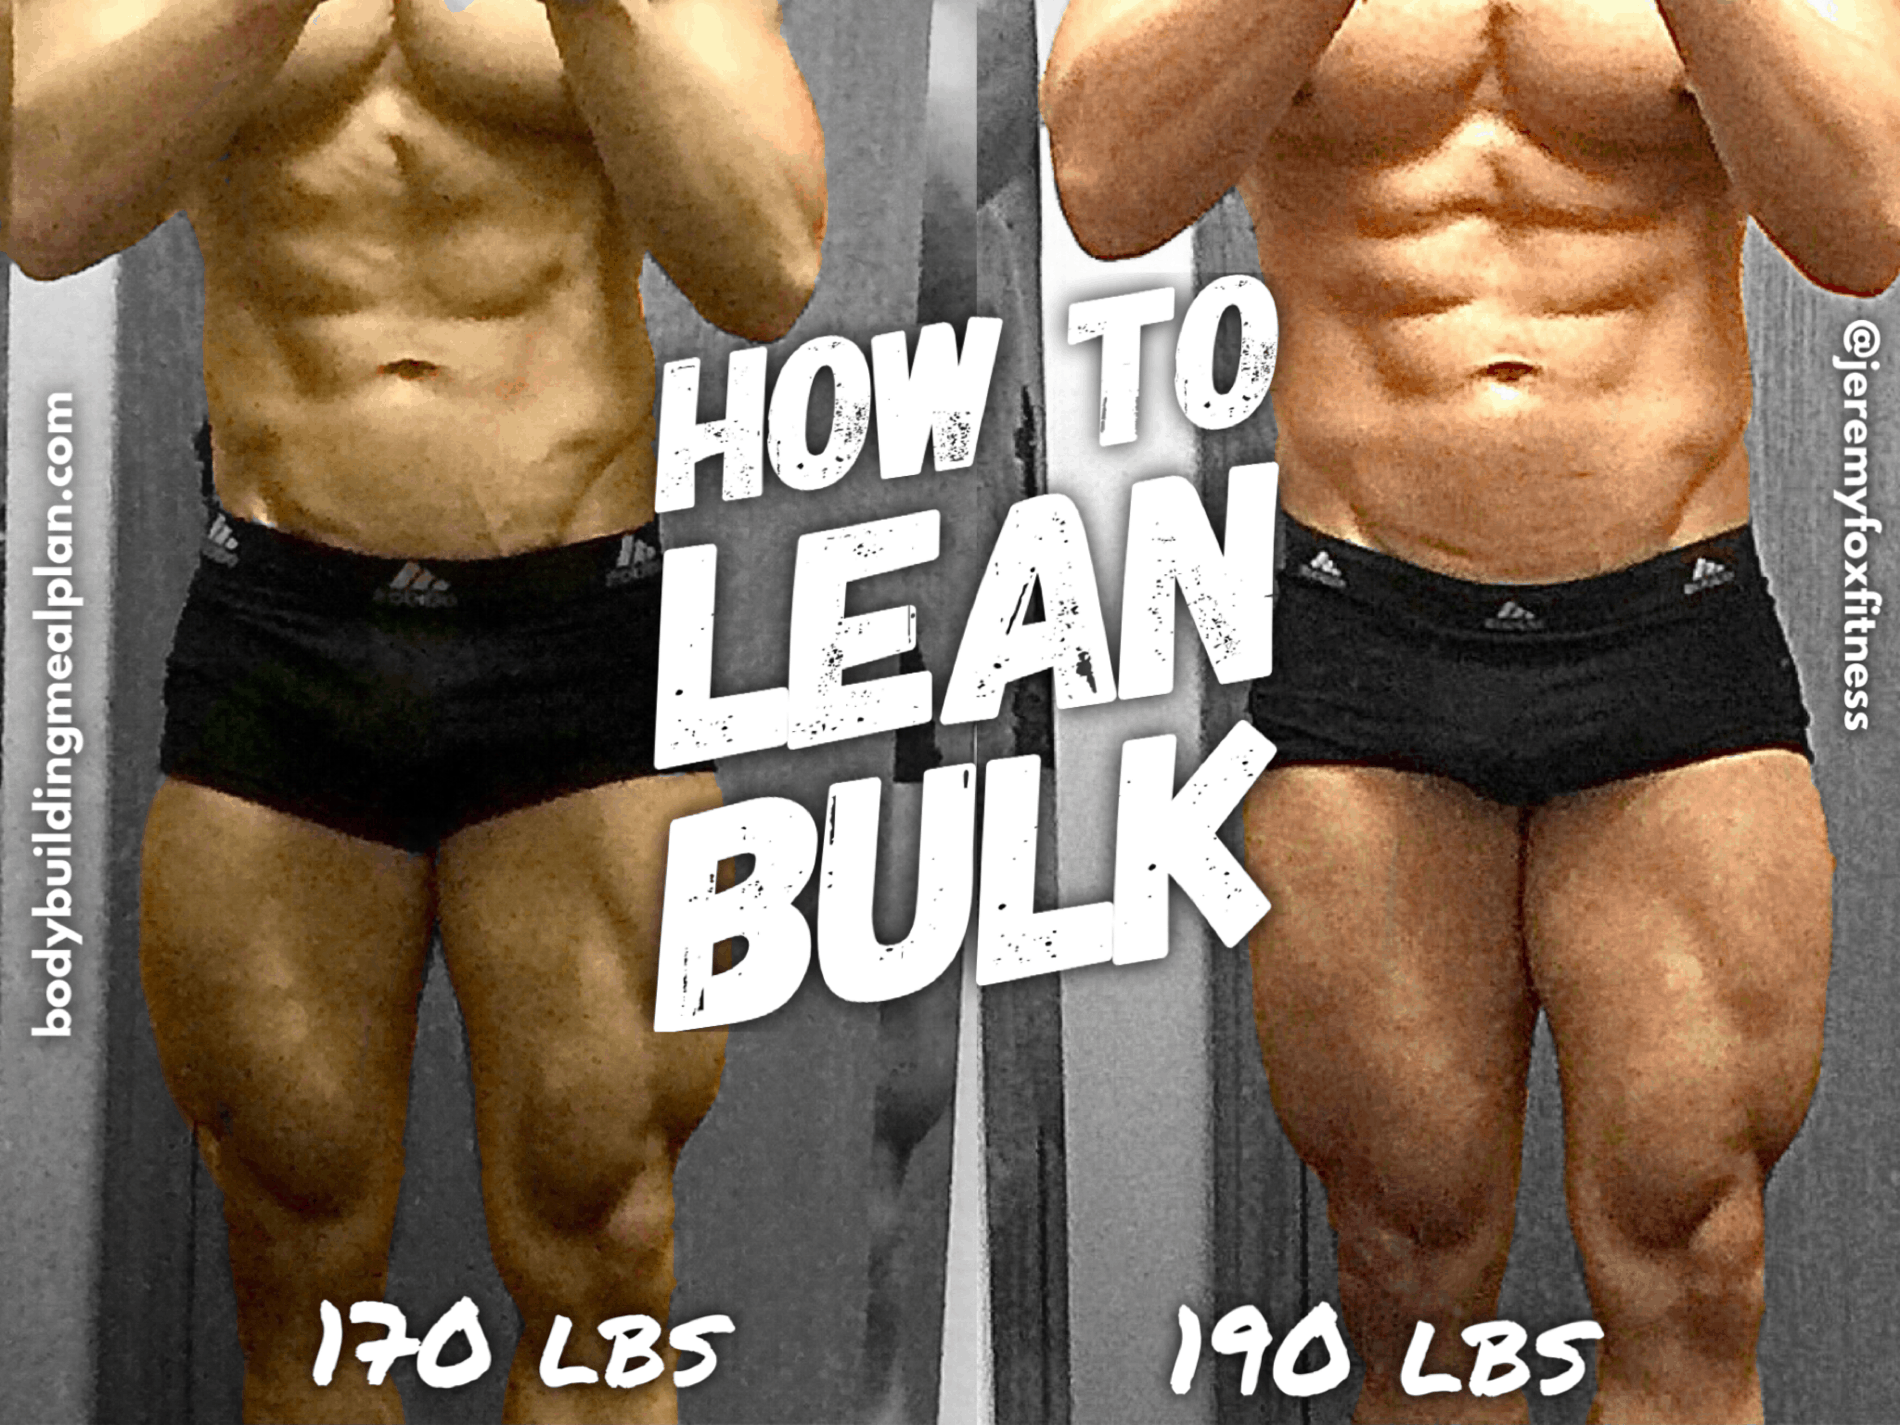 A take on lean bulking